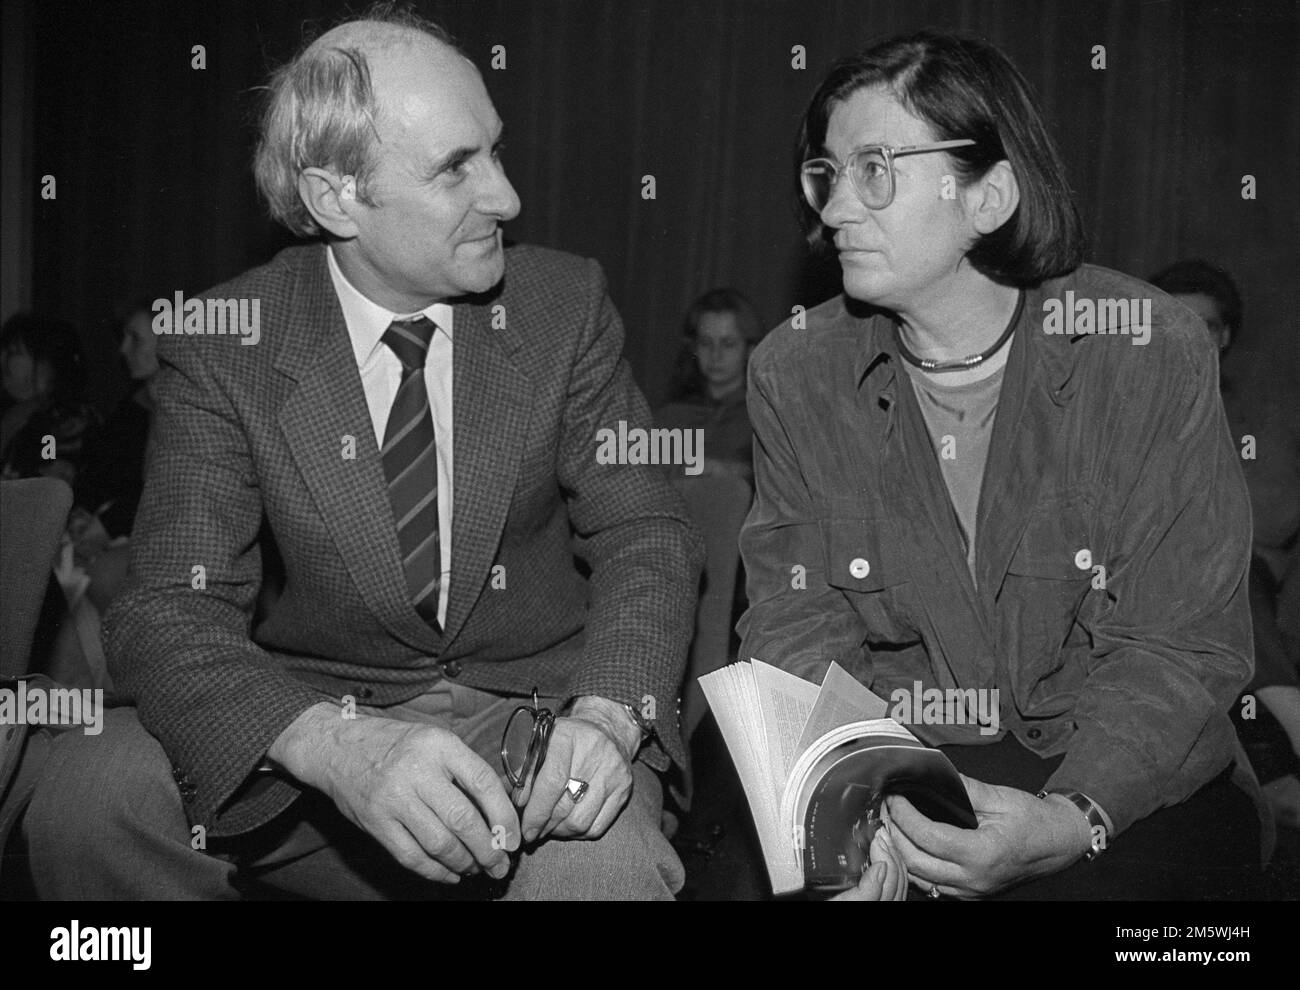 Alemania, Berlín, 14 de marzo de 1991 (de izquierda a derecha) Heinrich Fink, rector de la Universidad Humboldt de Berlín, Christa Wolf, en un evento organizado Foto de stock